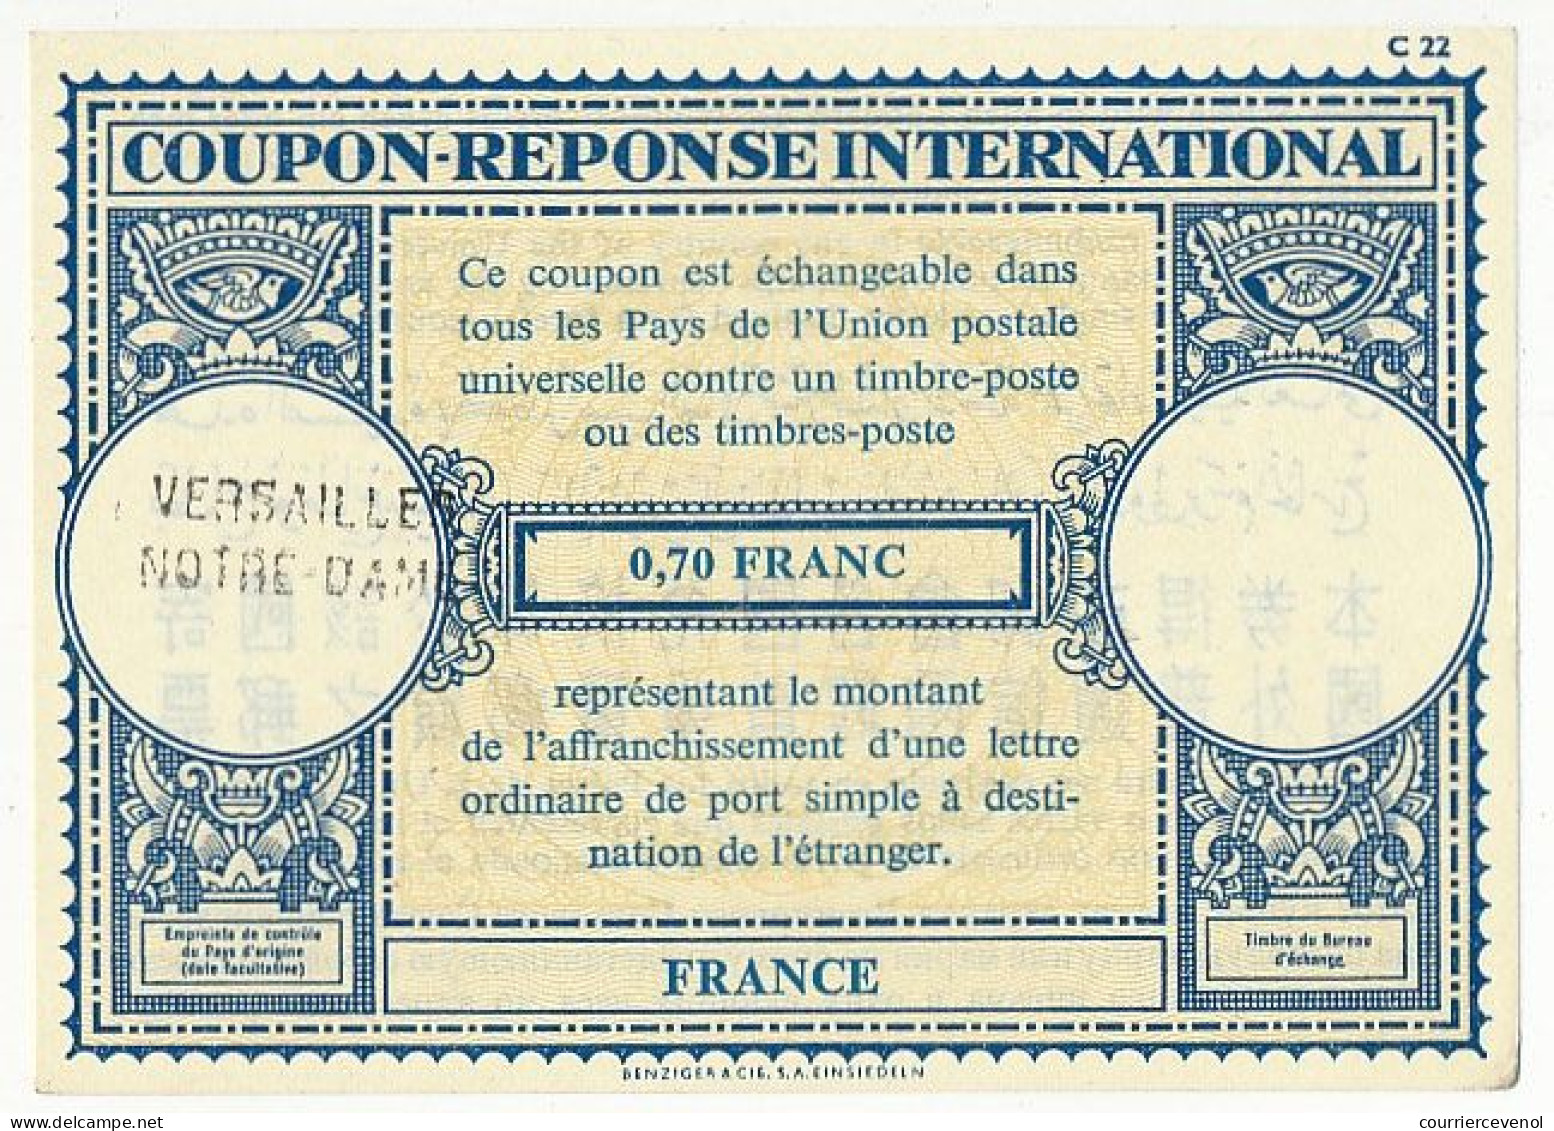 Coupon-Réponse International 0,70 Franc - Cachet Linéaire Versailles Notre Dame - Reply Coupons